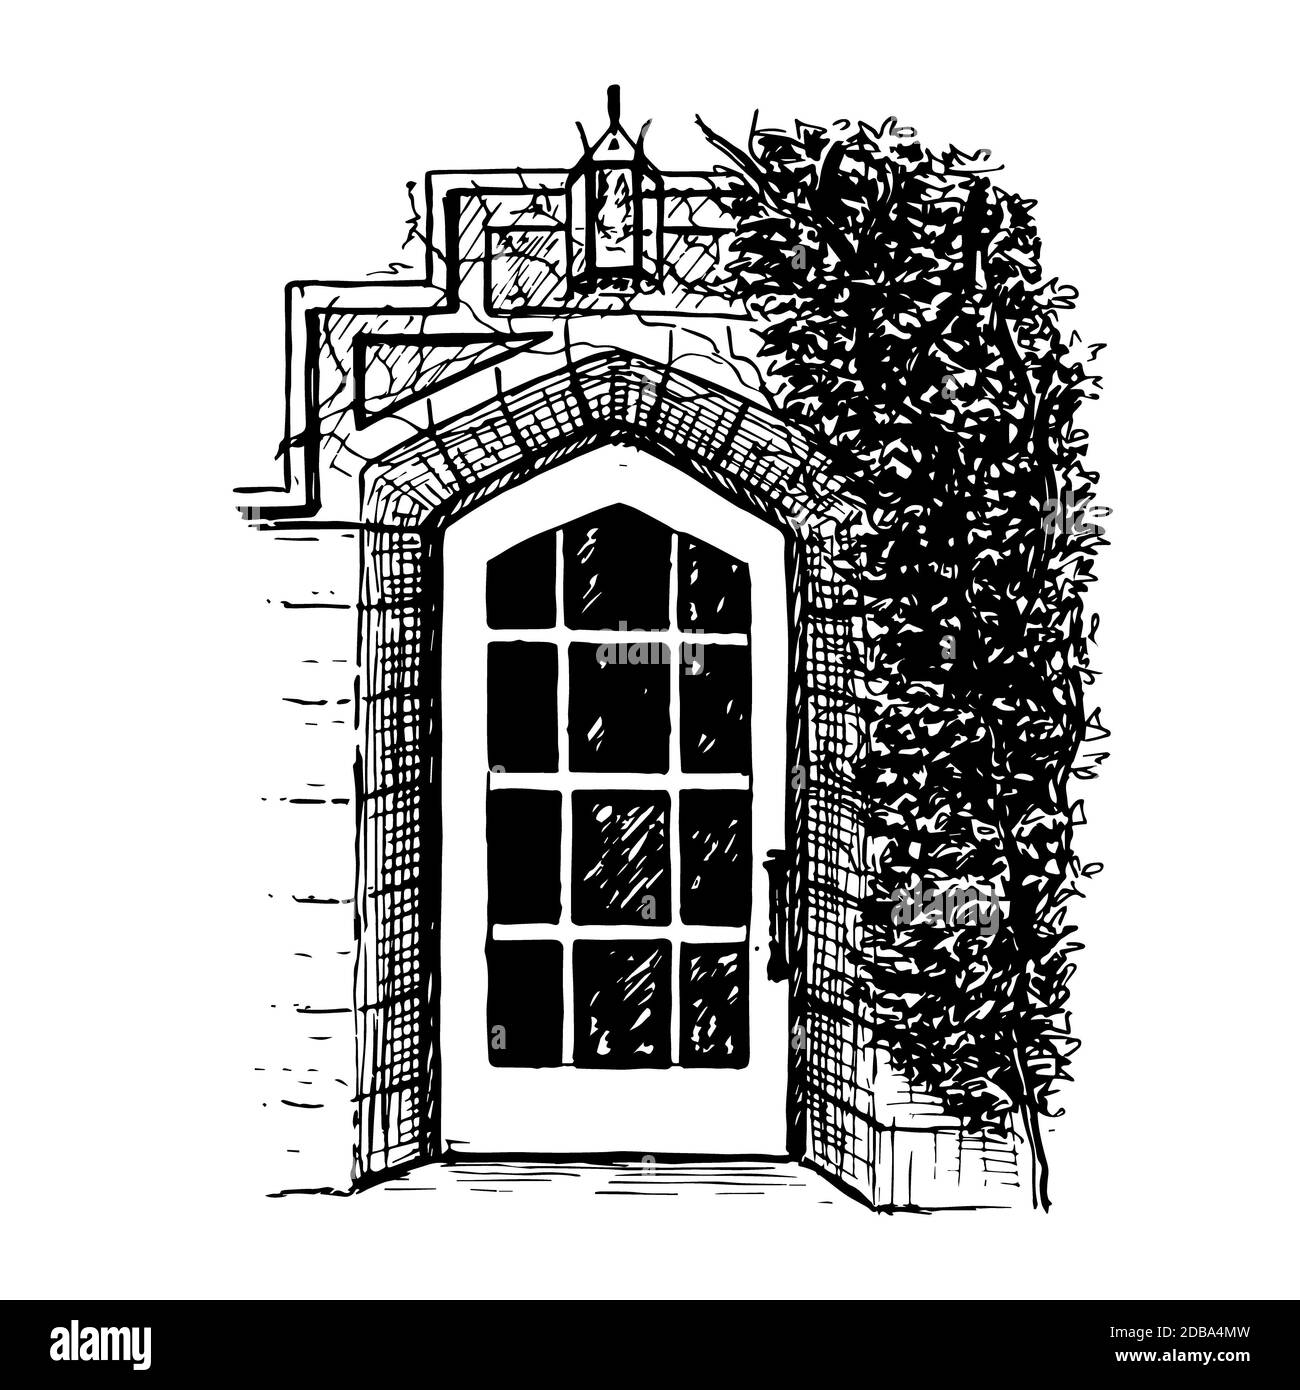 Una porta vintage con archi intemperati con silhouette in stile francese. Lampada, albero, muro in mattoni. Illustrazione disegnata a mano. Stile di schizzo della penna di inchiostro. Icona per il vostro disegno, Foto Stock